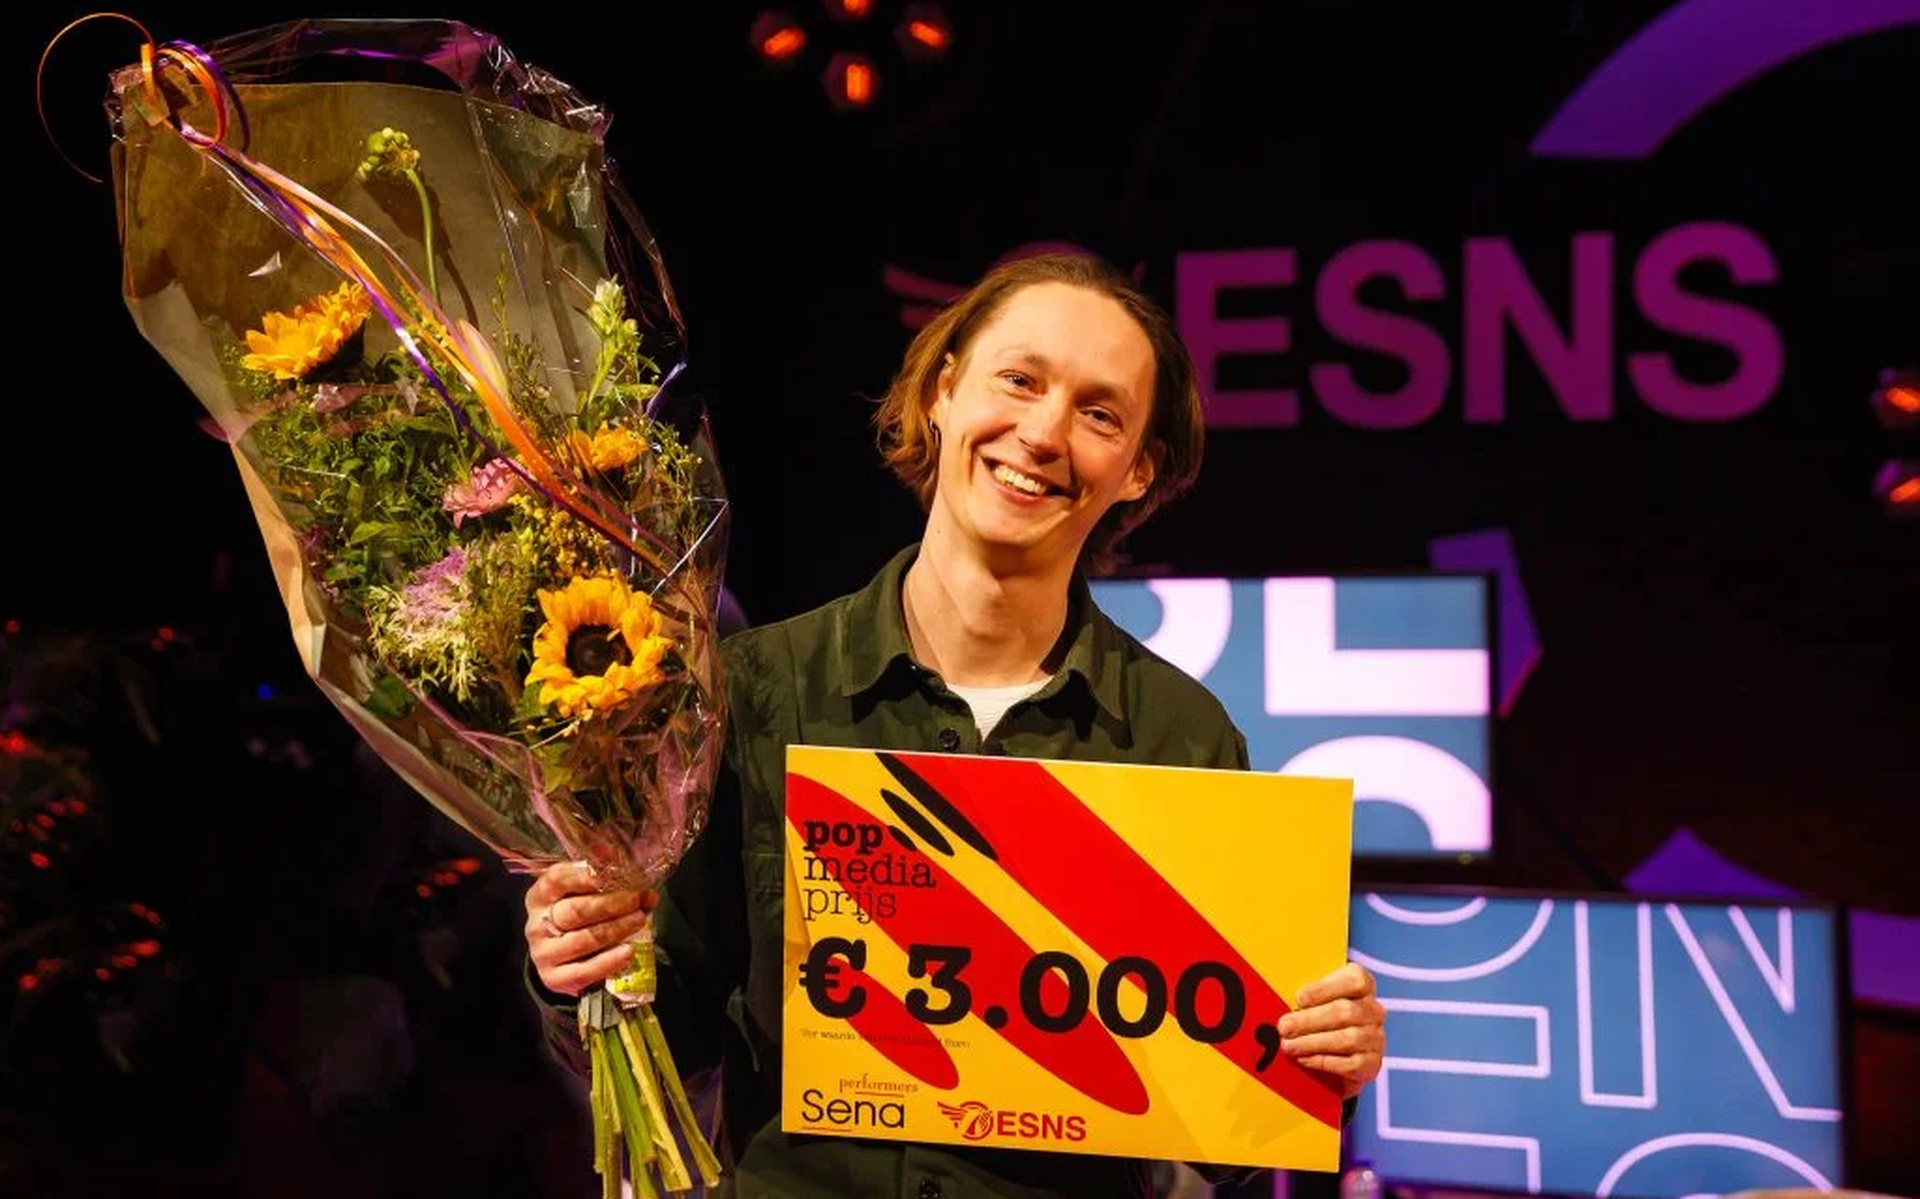 Timo Pisart, winnaar van de Pop Media Prijs 2021. 